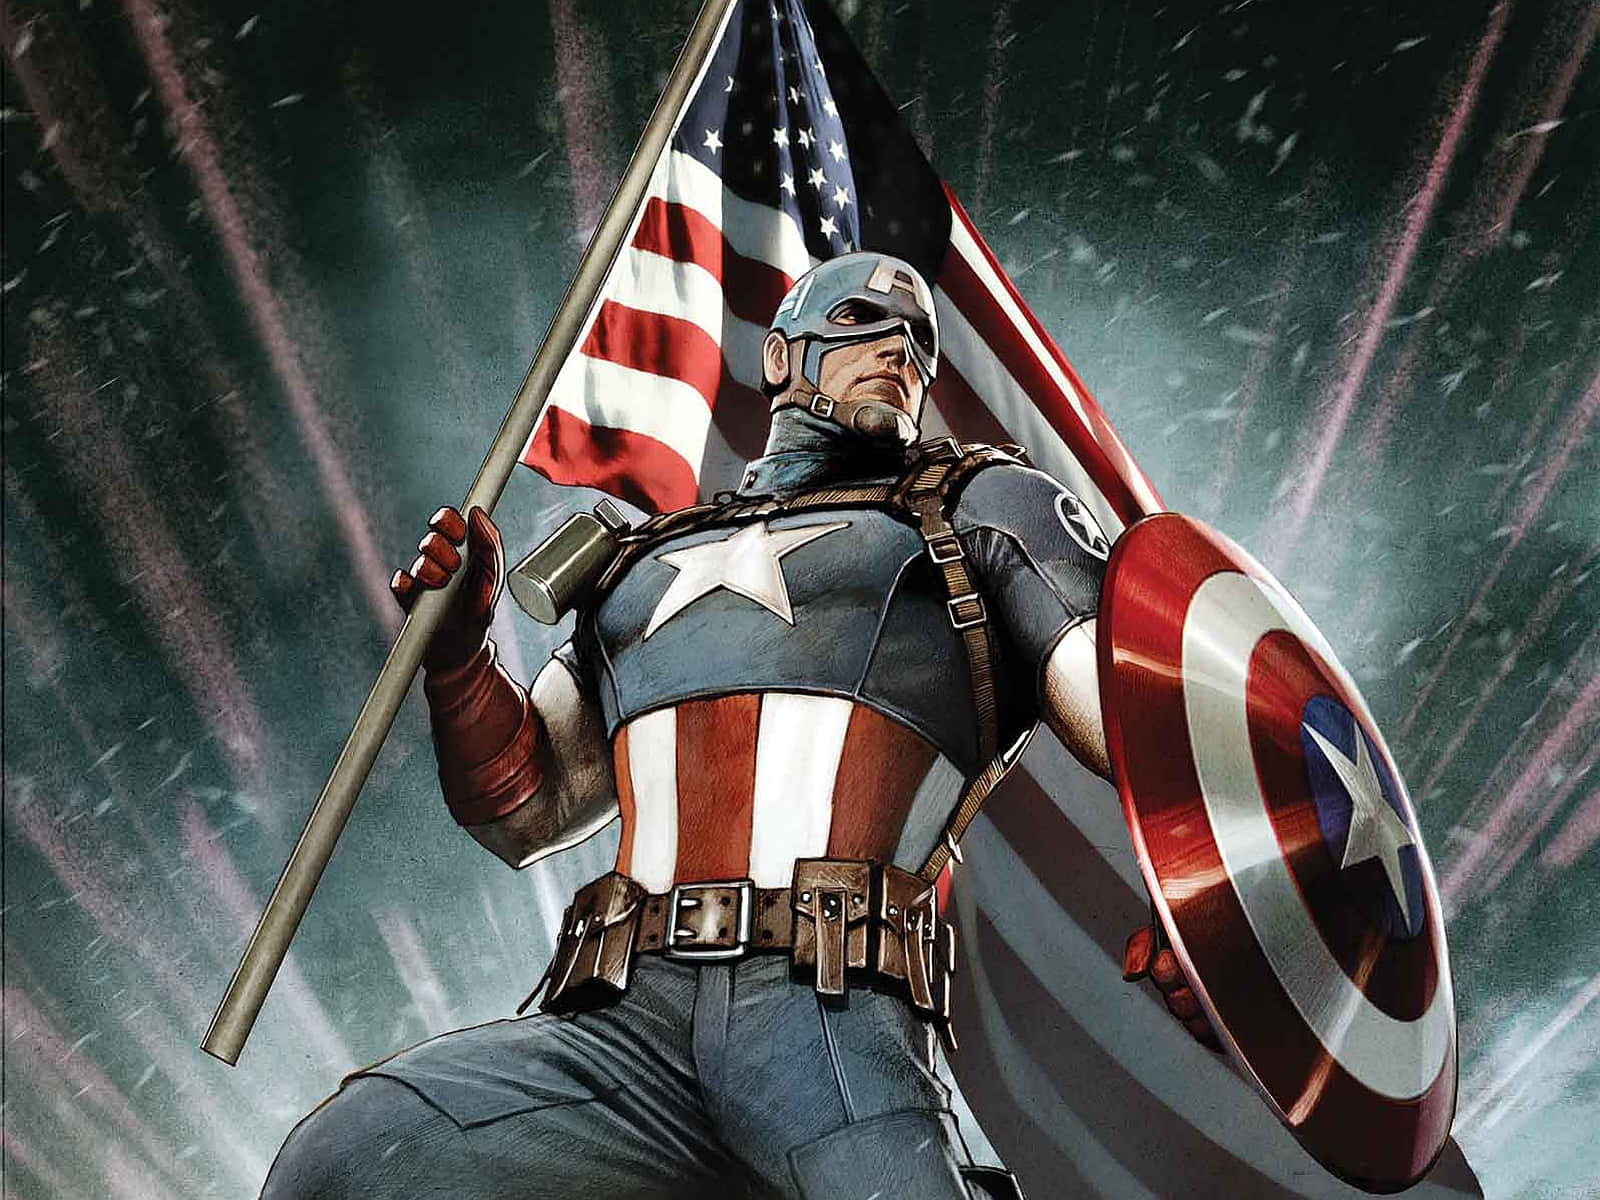 Marvelsseriefigur Captain America Bakgrundsbild.